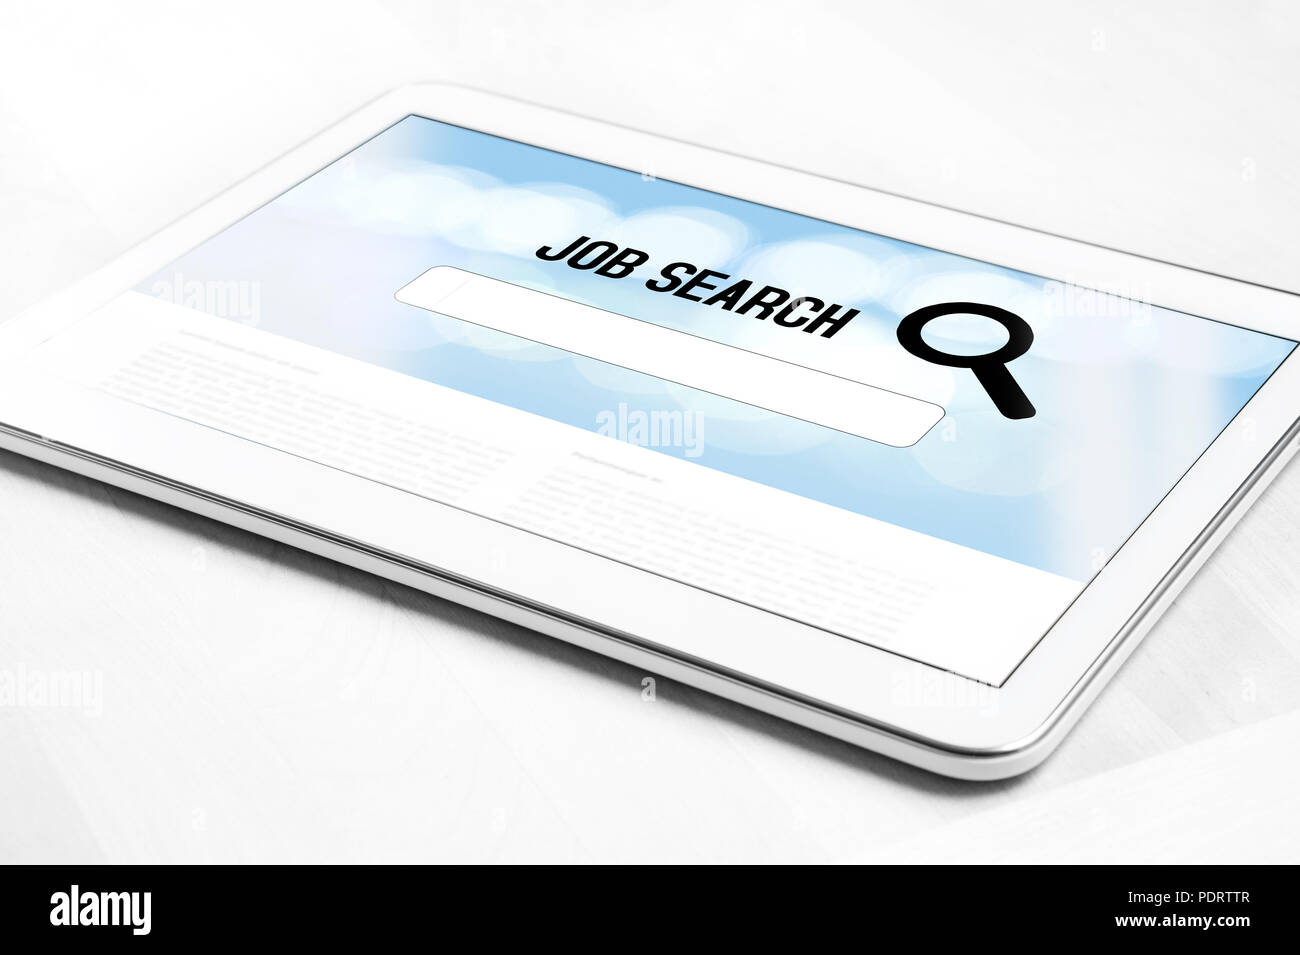 Online Job search engine Website auf Tablet Bildschirm. Durchsuchen von Websites arbeiten angestellt zu erhalten. Arbeitssuche im Internet. Stockfoto